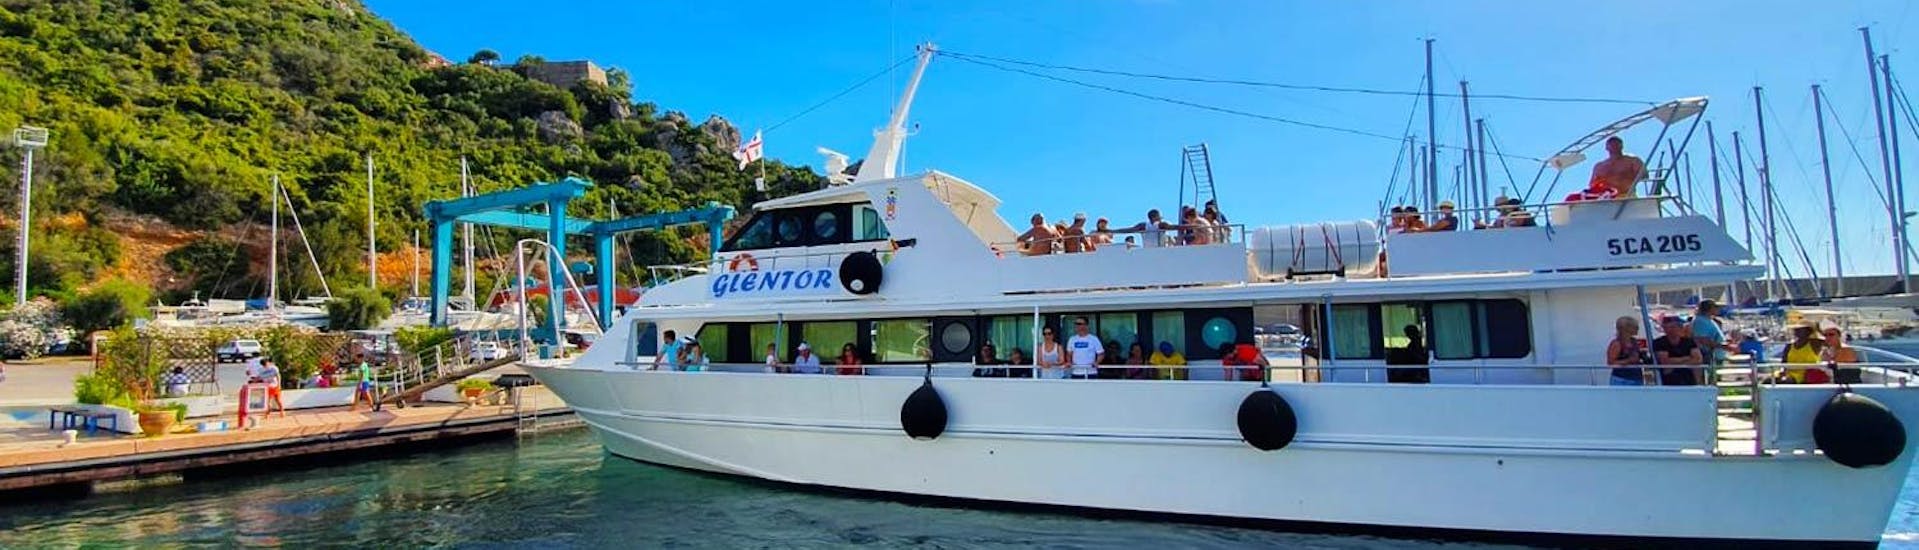 Foto von unserem Motorschiff Glentor während einer Bootstour mit Escursioni Glentor Arbatax.